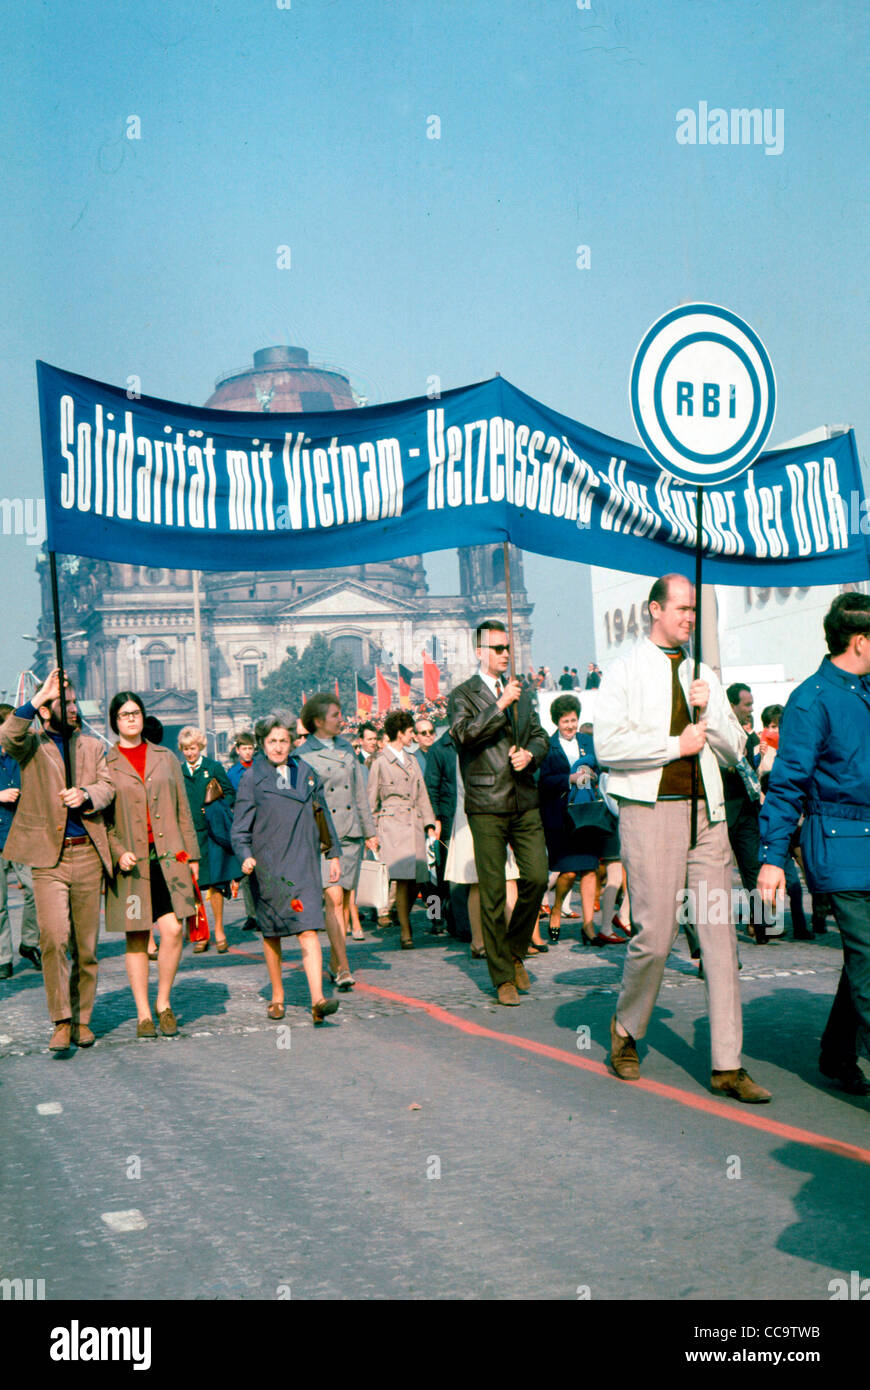 Mitarbeiter von Radio Berlin International RBI der DDR Solidarität ihre für kommunistischen Nordvietnam auf 1. Mai 1966 Stockfotografie - Alamy